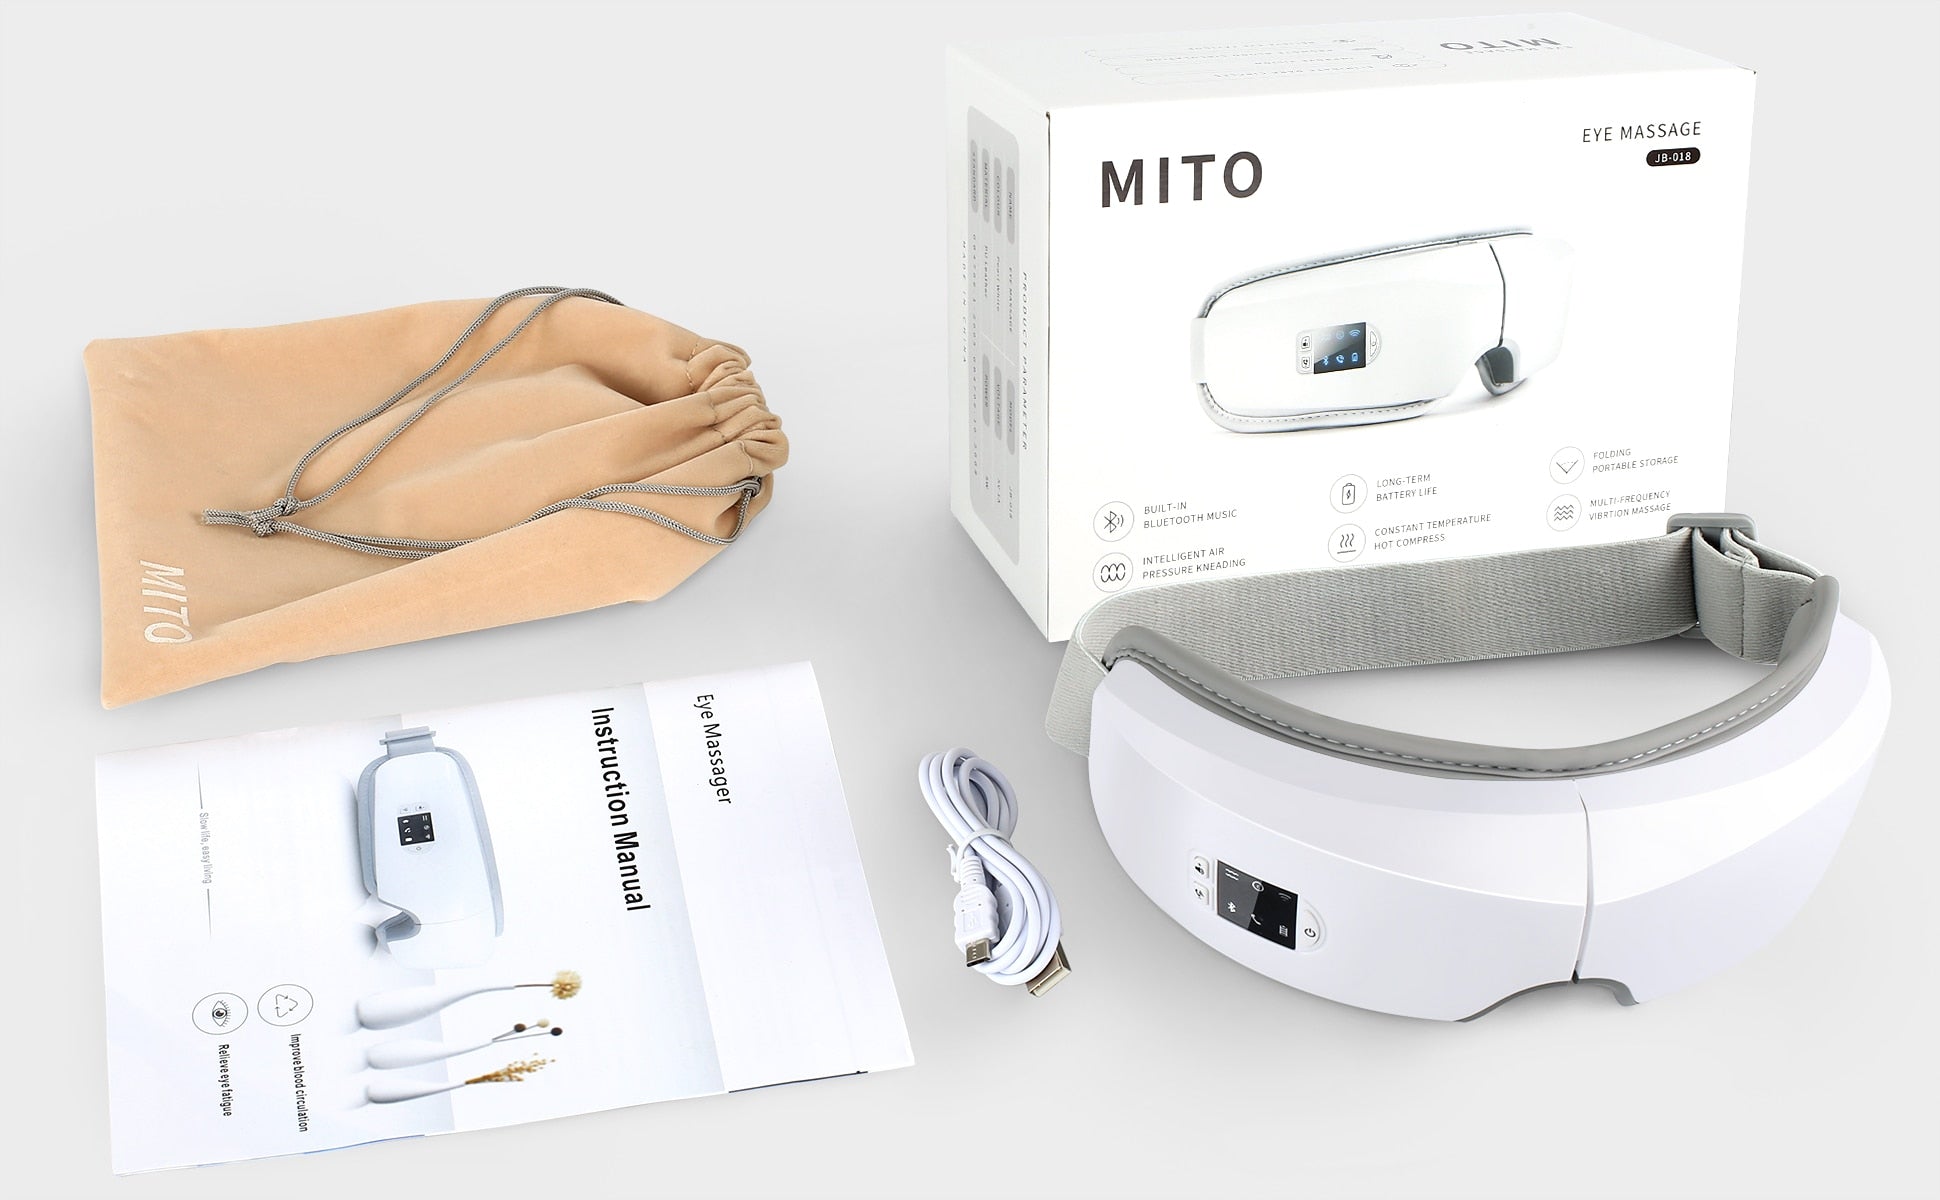 Smart Airbag Vibration Eye Massager - ZHOFT